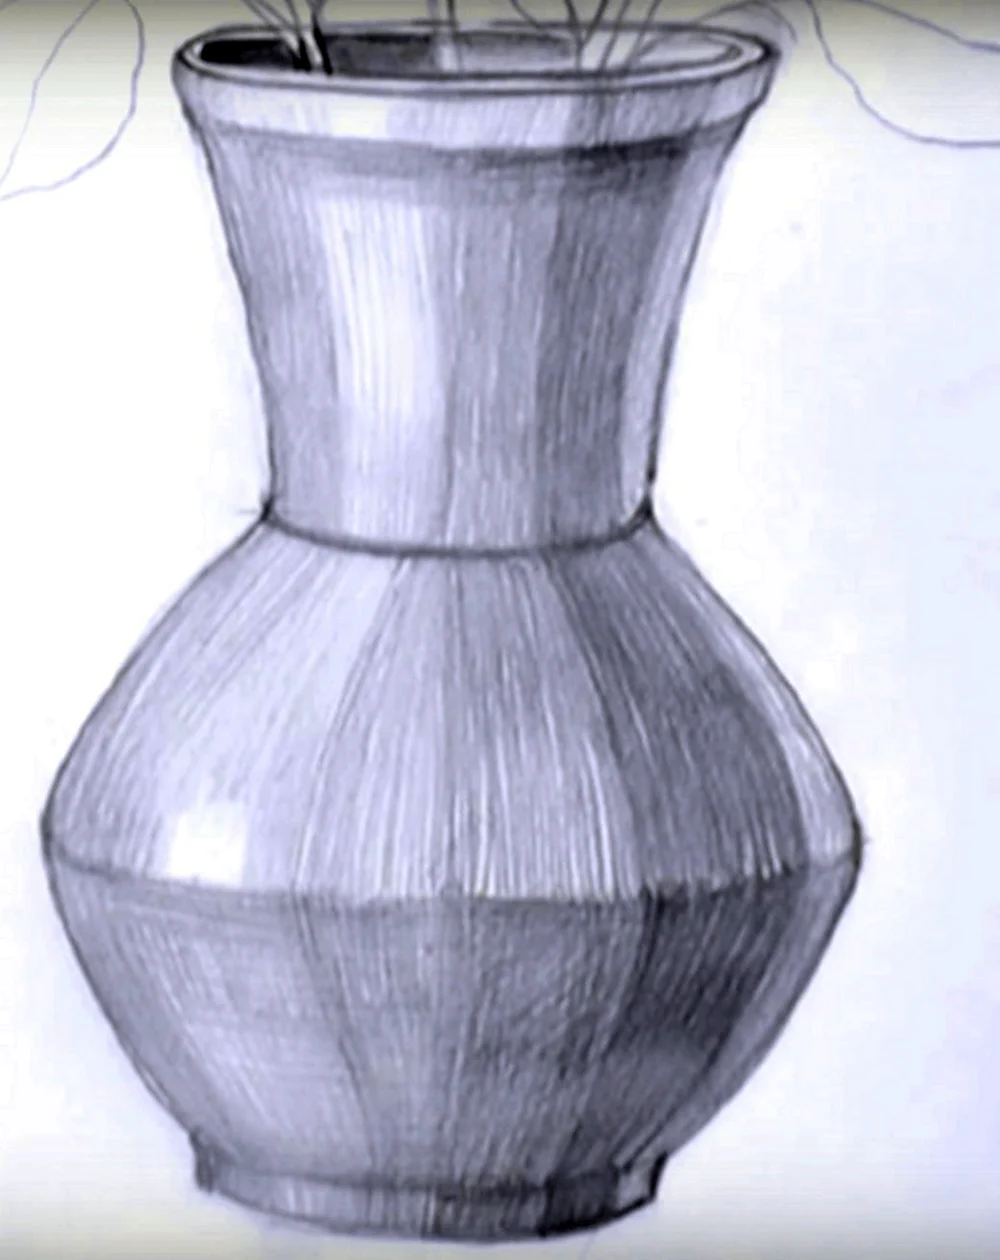 Вазы нарисовать картинки. Ваза для рисования. Рисунок вазы. Рисование вазы. Вазы карандашом.